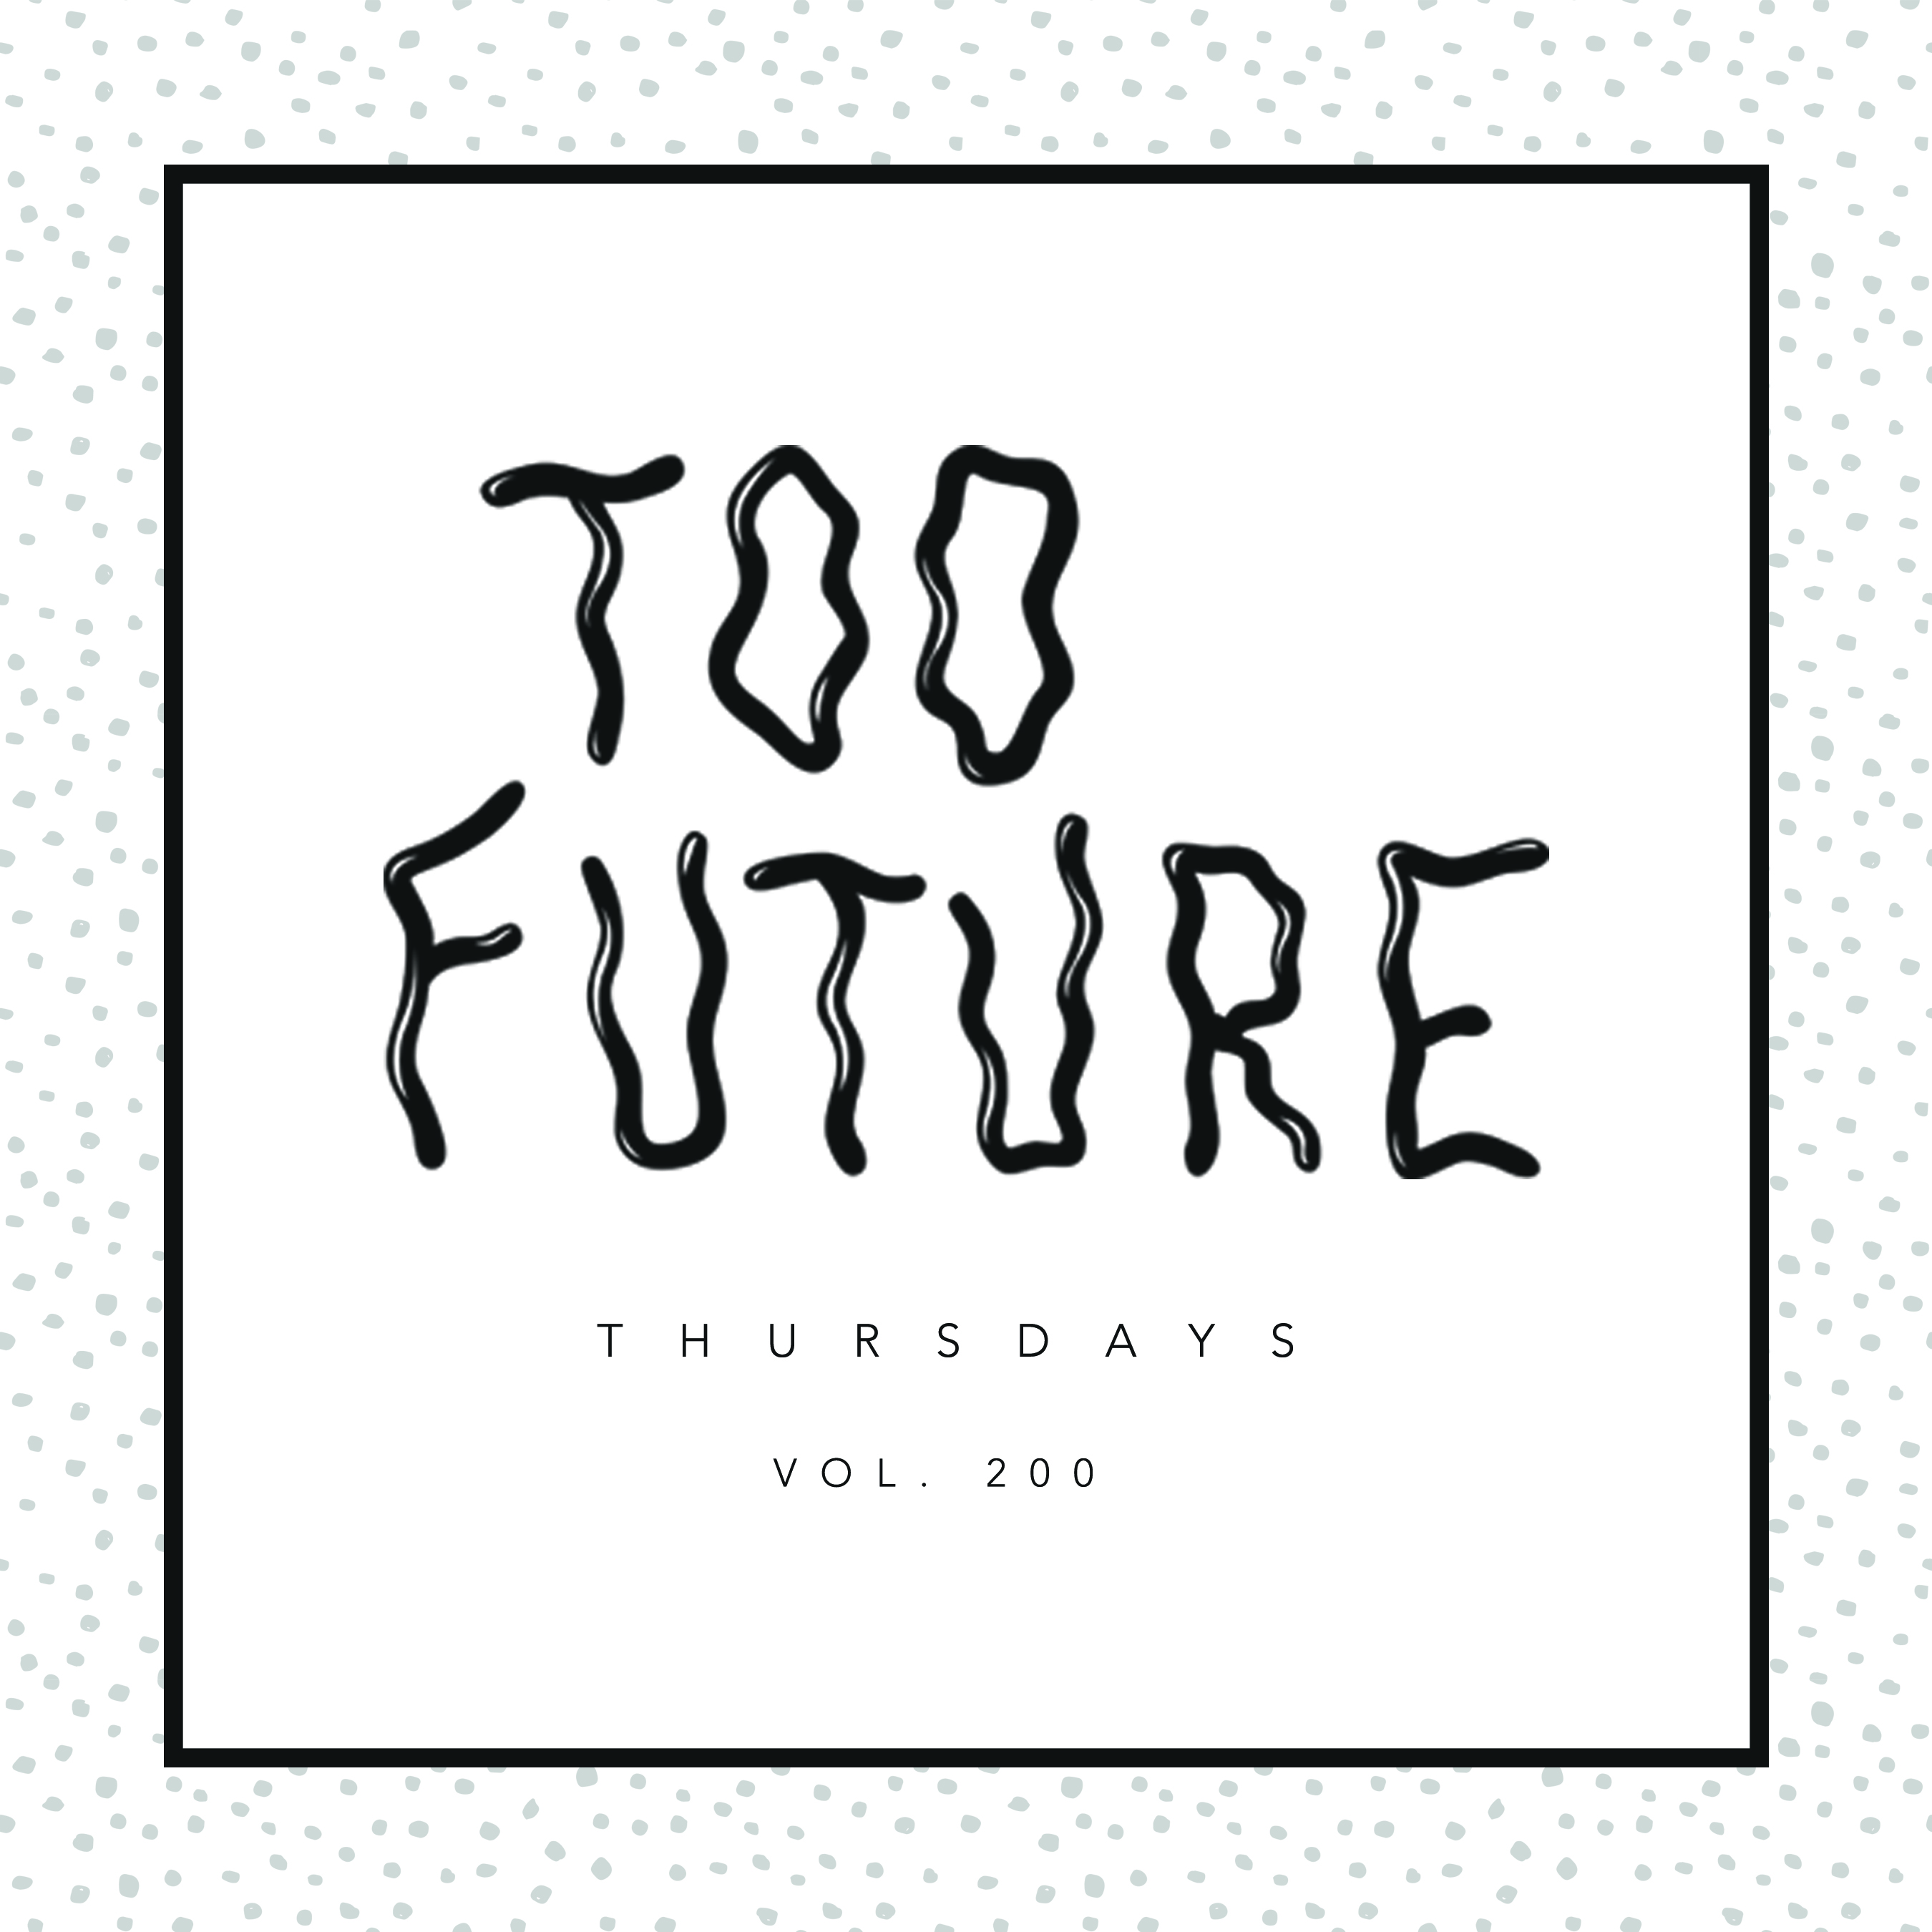 too-future-thursdays-vol-200